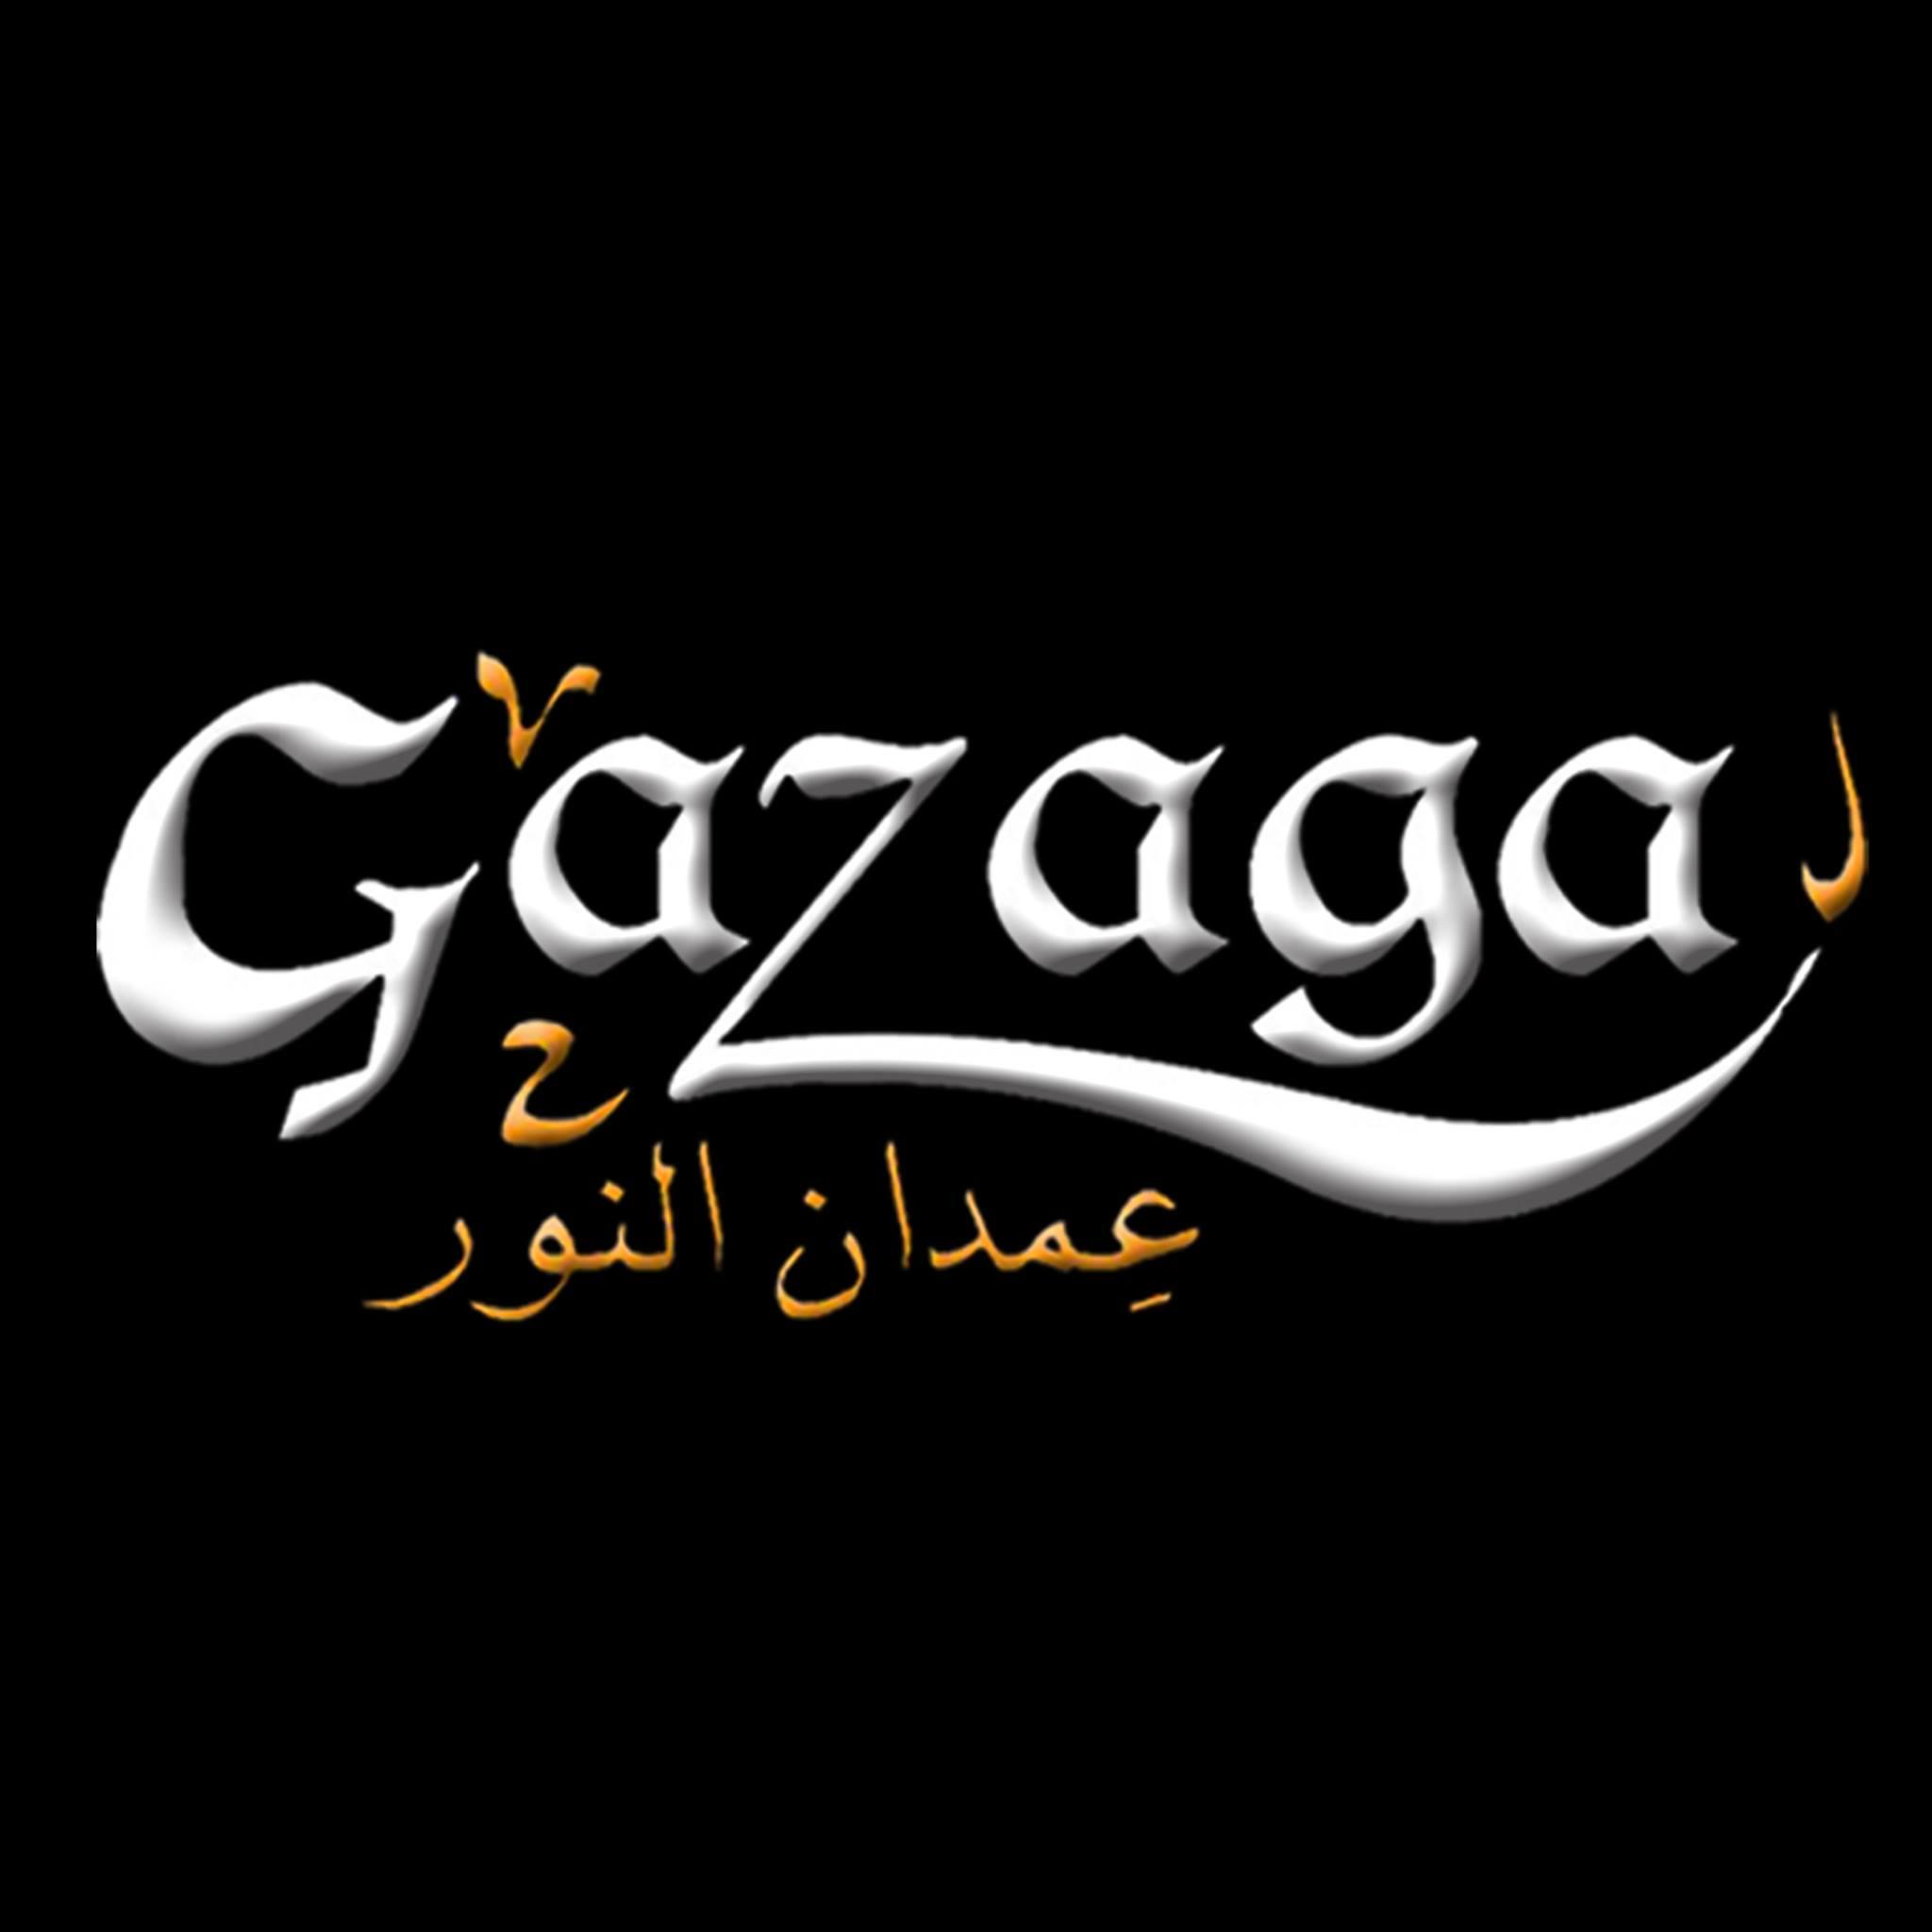 Gazaga